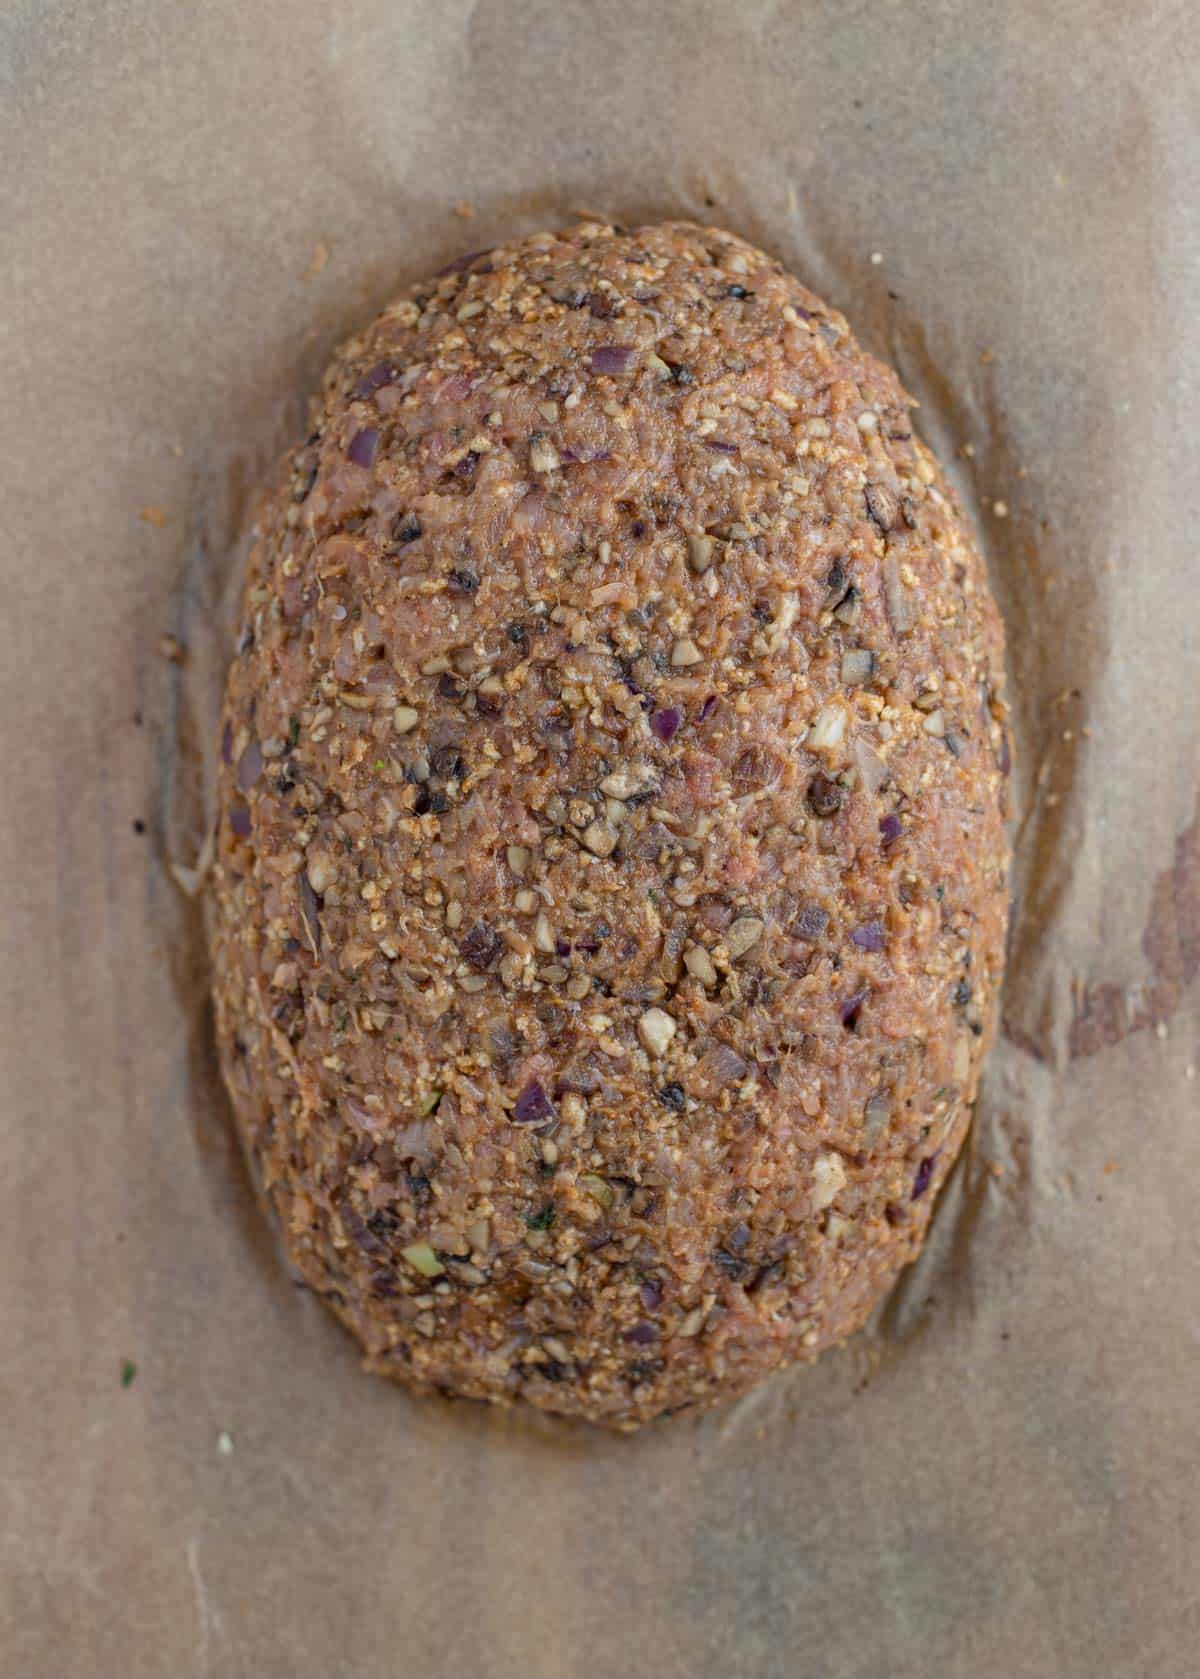 Turkey meatloaf formed into a loaf.